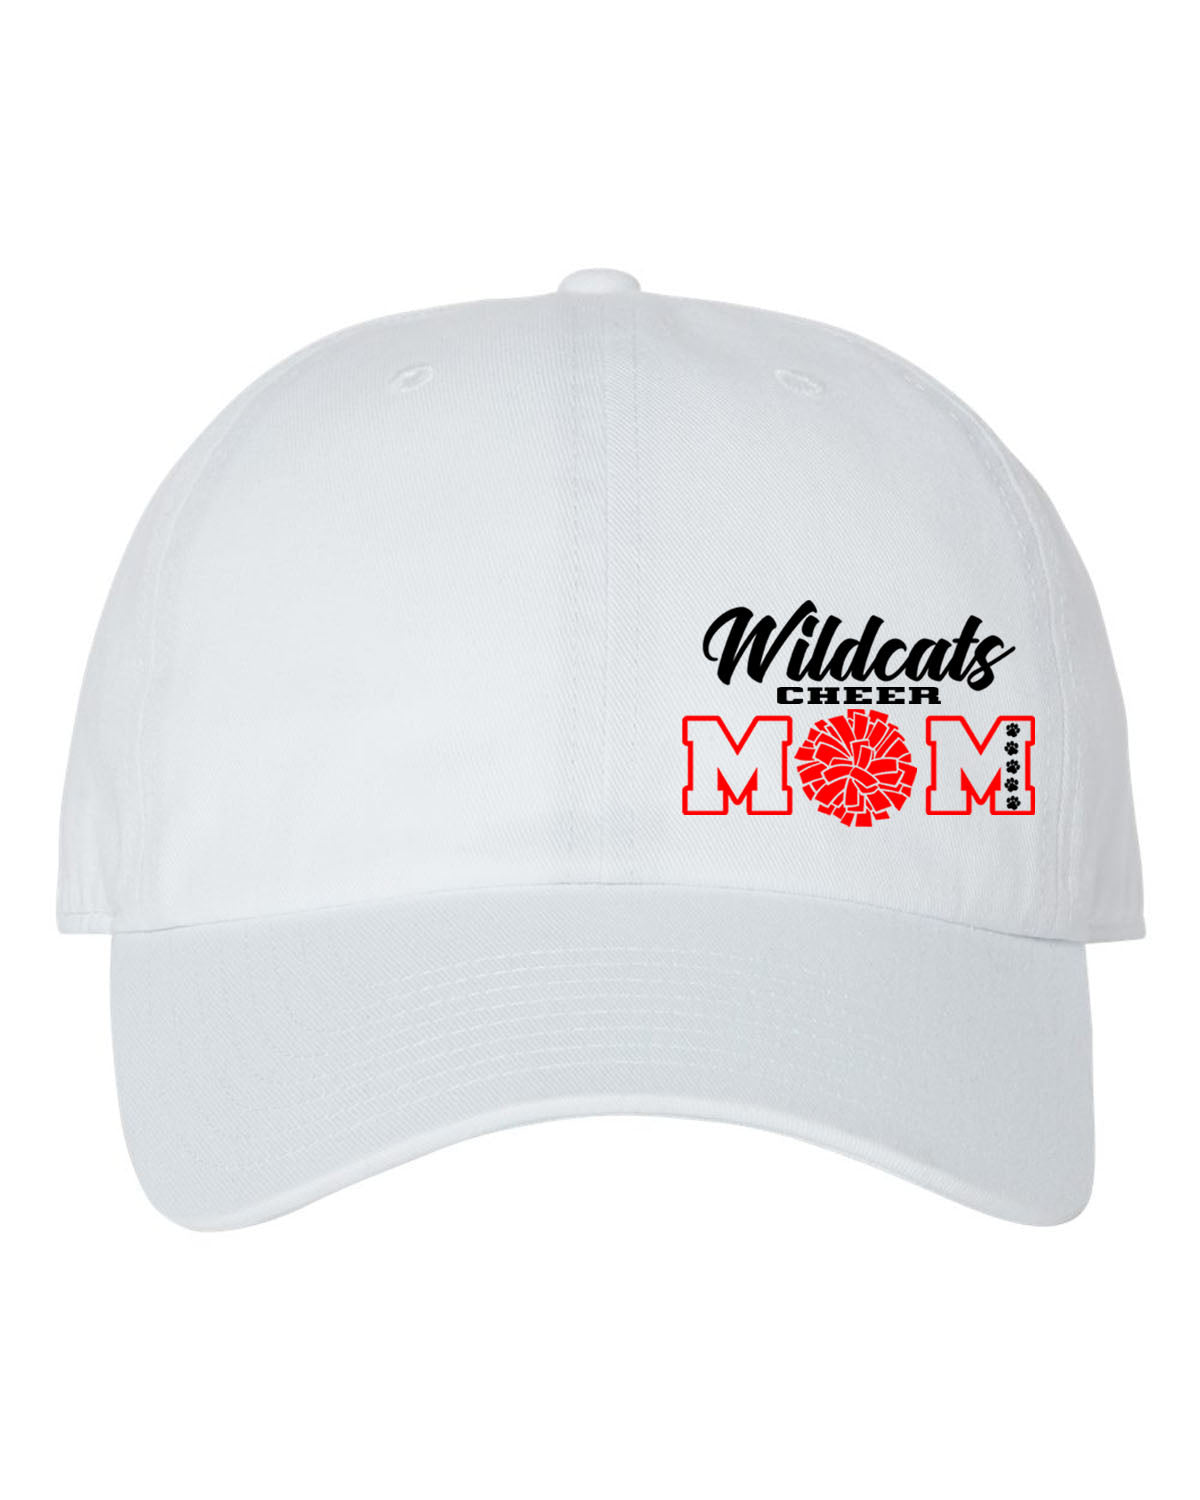 Wildcats Cheer design 7 Trucker Hat